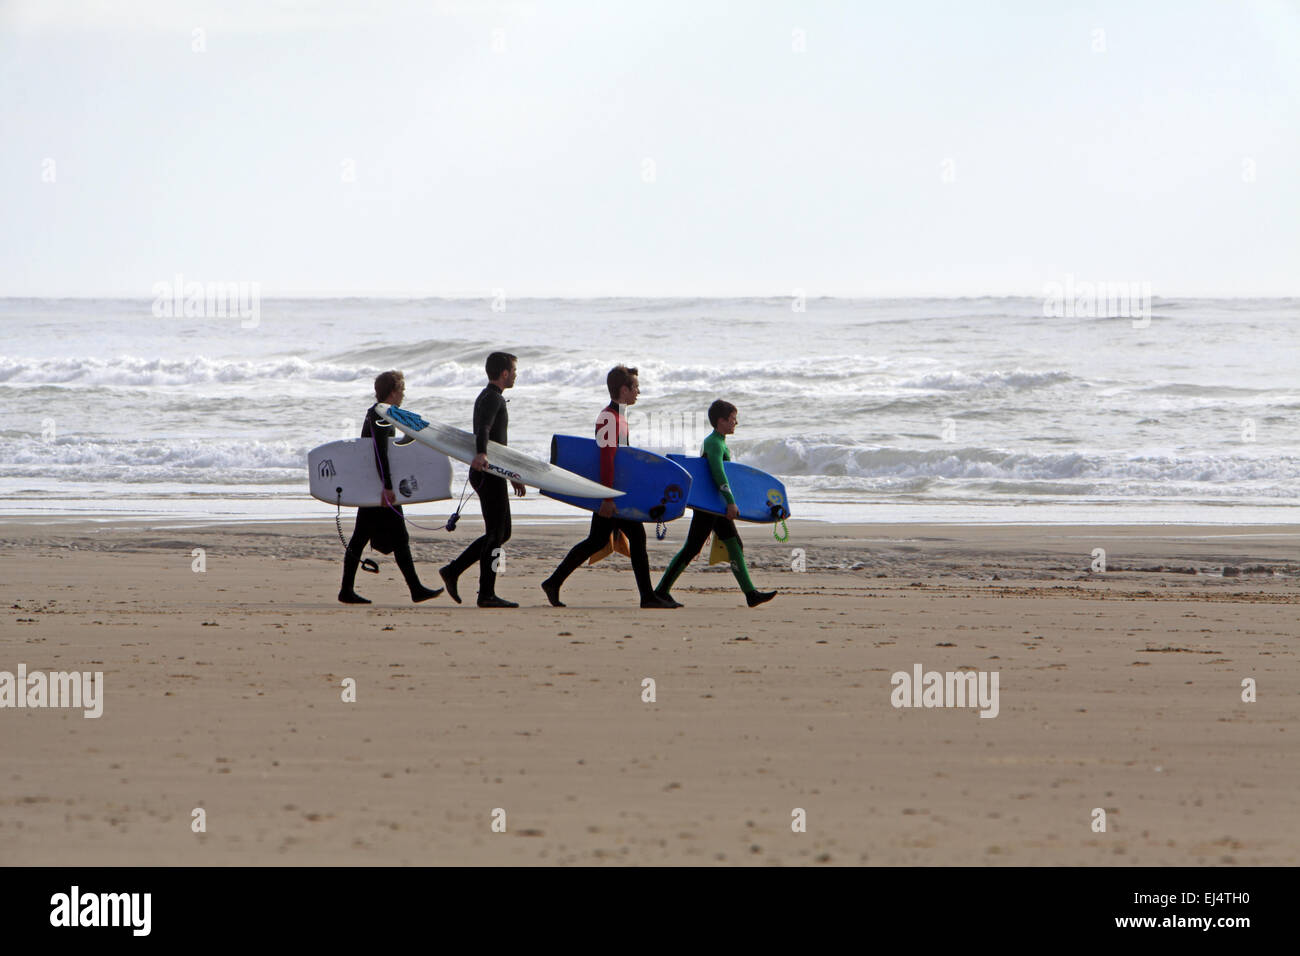 Session de surf sur la Côte Sauvage, La Tremblade, Océan Atlantique, Aquitaine, France Banque D'Images